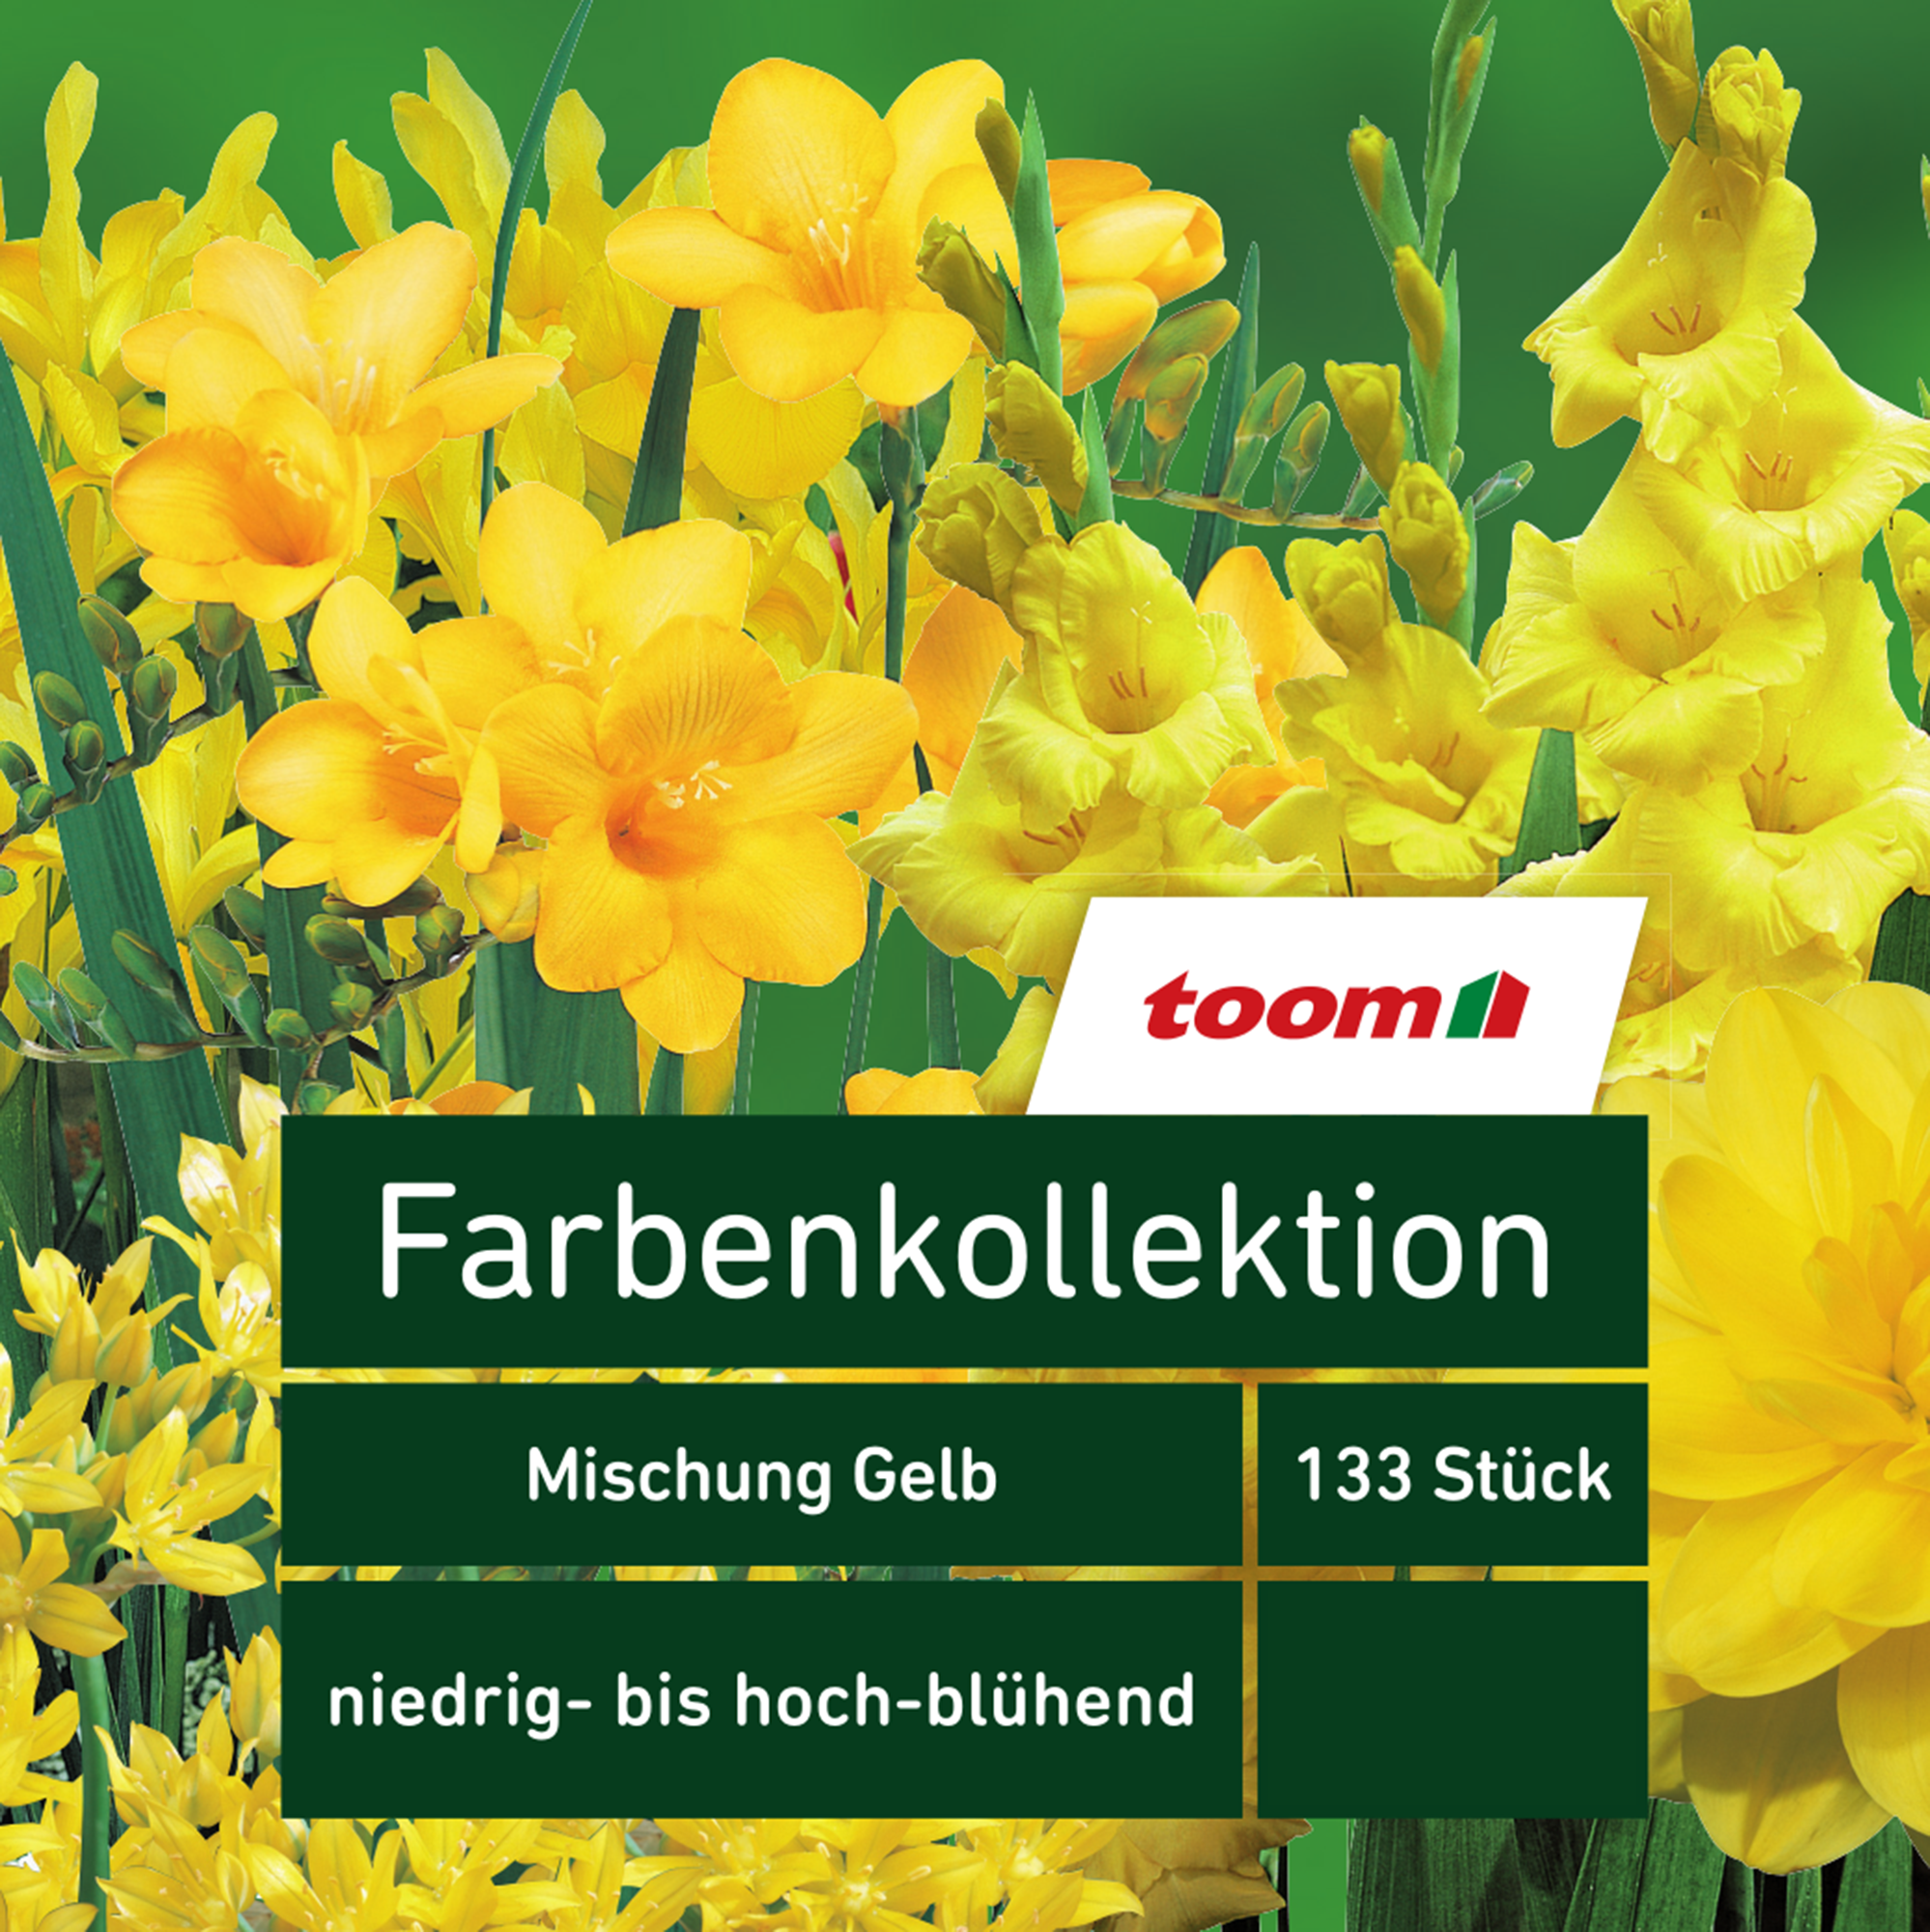 Blumenzwiebeln Farbenkollektion 'Mischung Gelb' 133 Stück + product picture